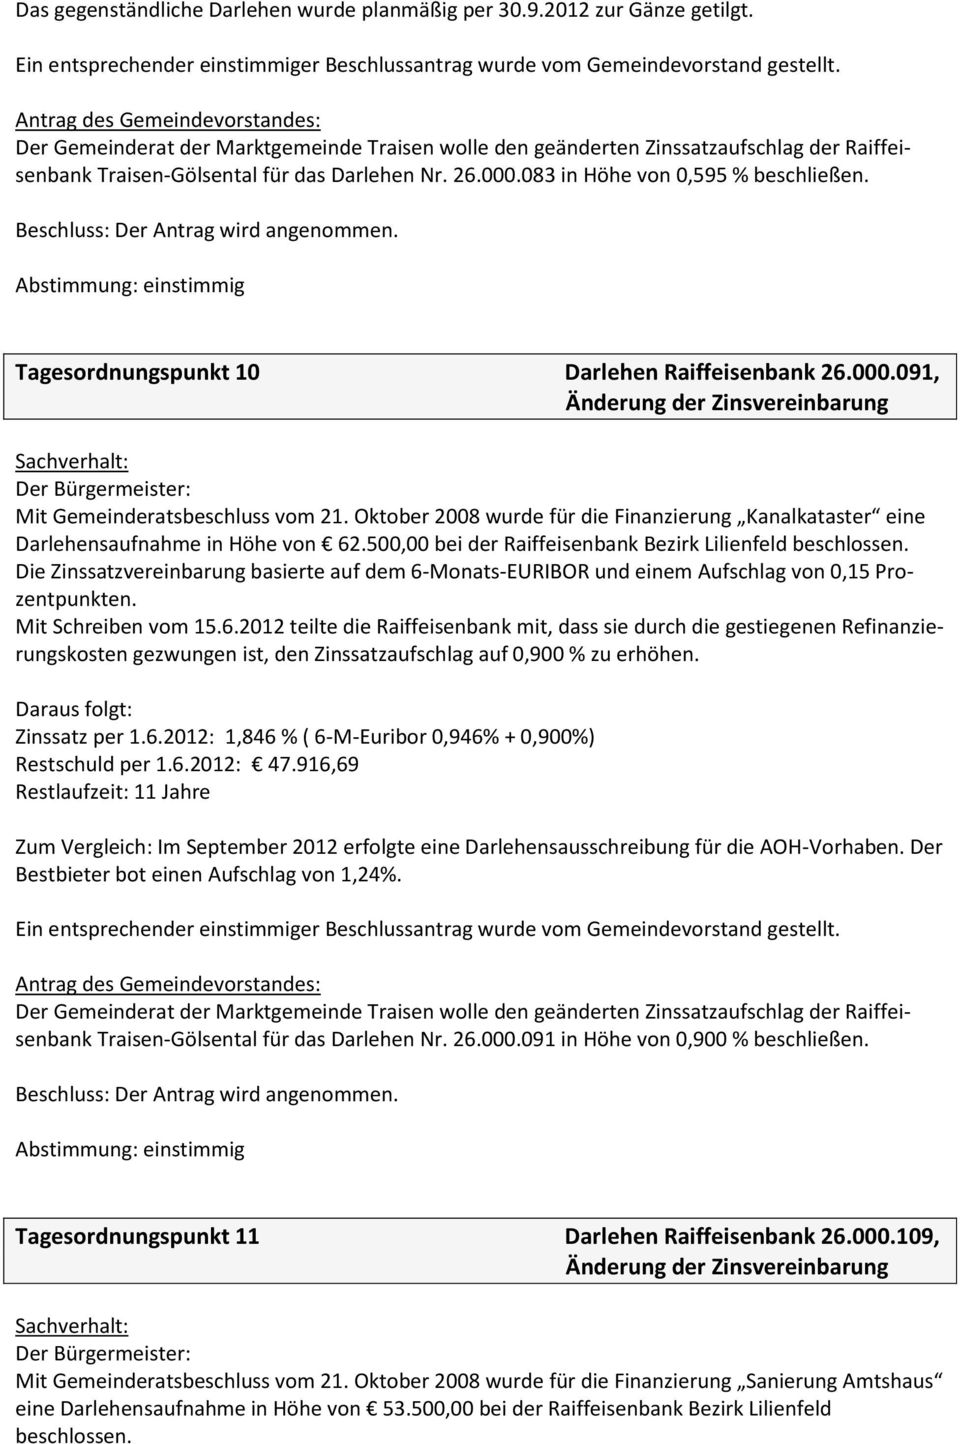 Tagesordnungspunkt 10 Darlehen Raiffeisenbank 26.000.091, Mit Gemeinderatsbeschluss vom 21. Oktober 2008 wurde für die Finanzierung Kanalkataster eine Darlehensaufnahme in Höhe von 62.